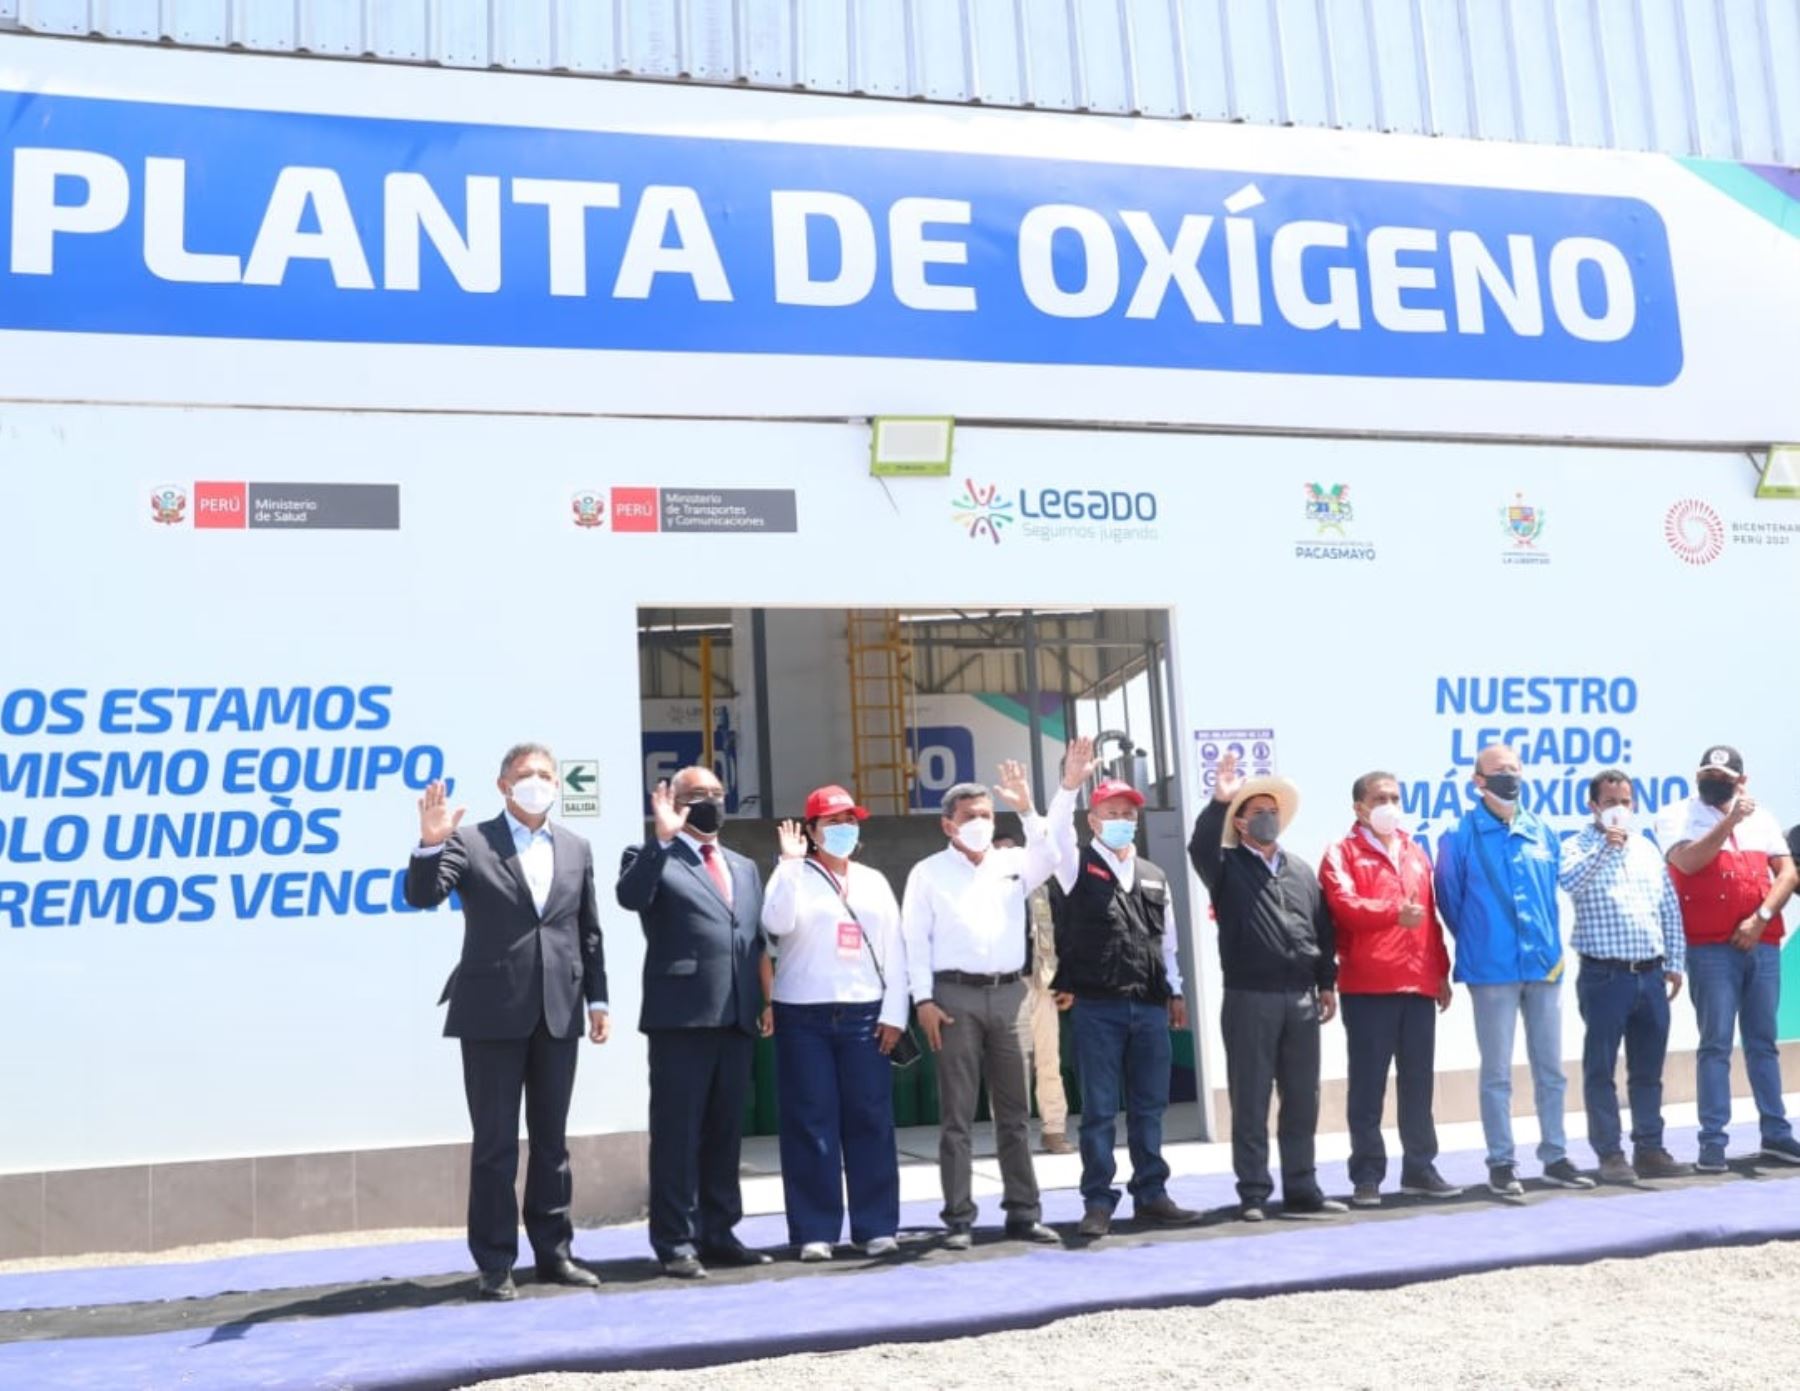 Una nueva planta de oxígeno fue inaugurada hoy en la provincia de Pacasmayo, región La Libertad. El equipo producirá 400 balones al día.